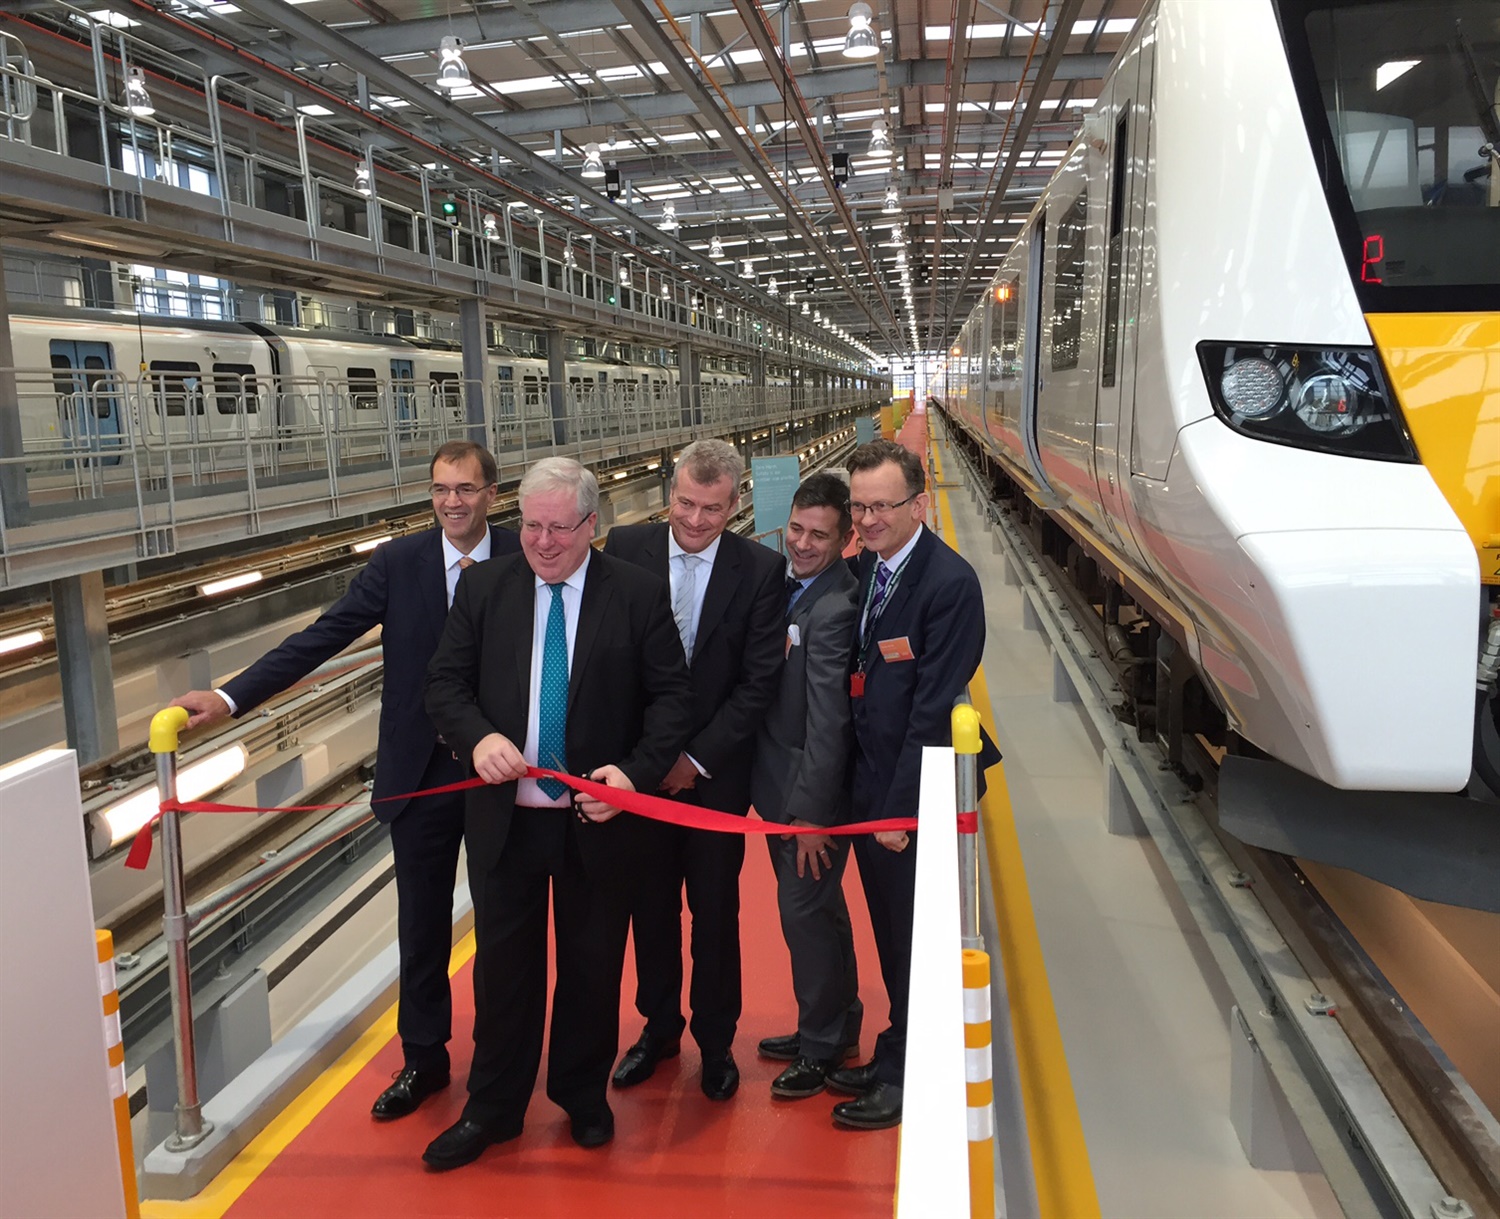 McLoughlin opens Three Bridges depot following Class 700 arrival